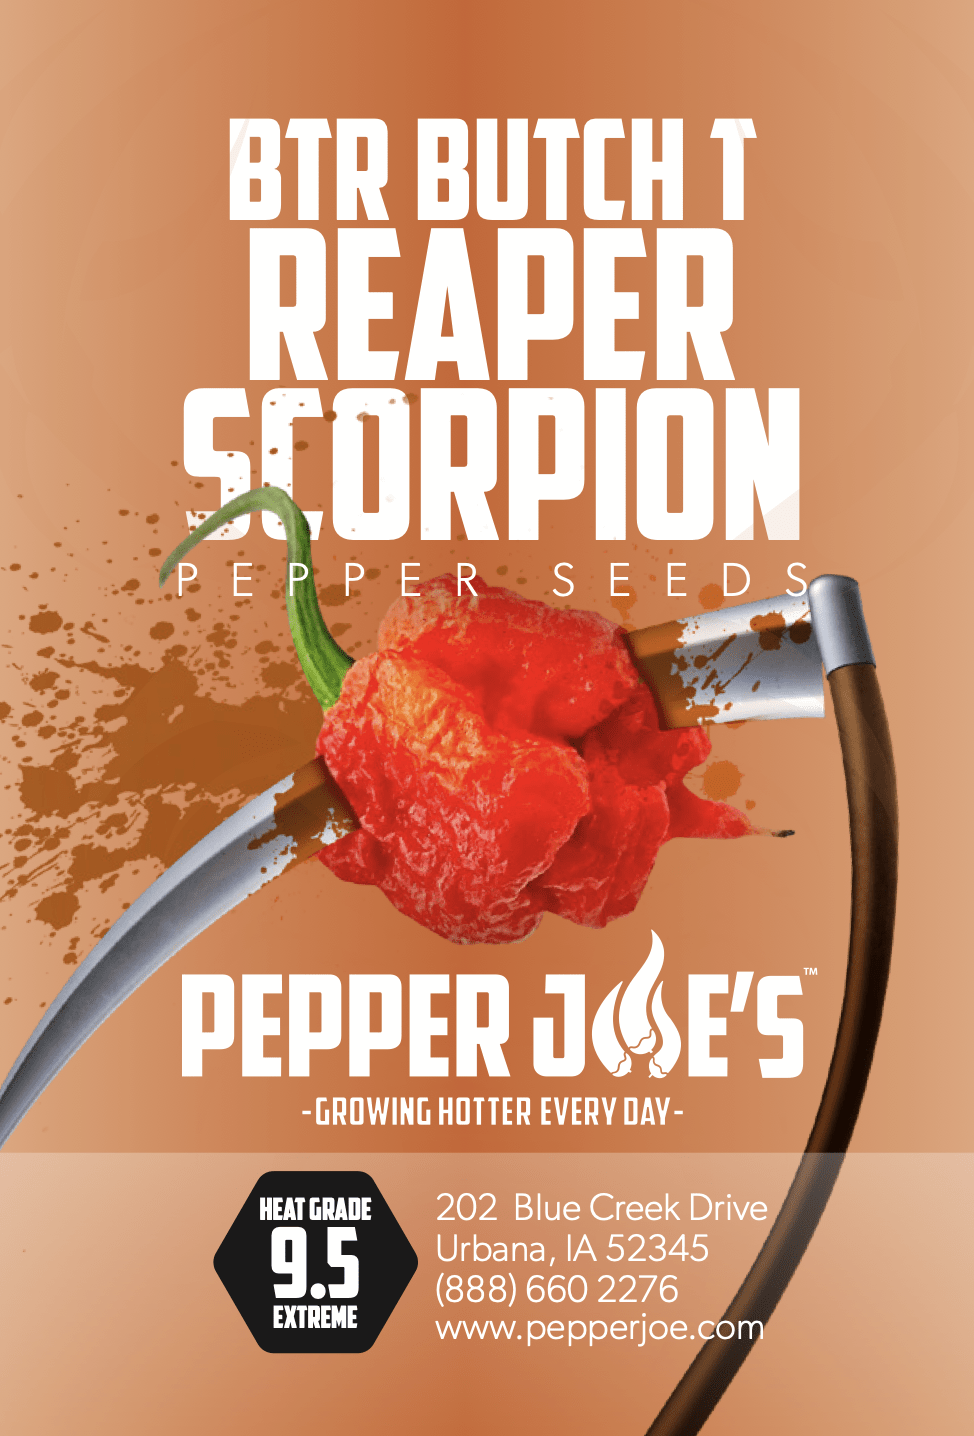 pepper joe's butch t reaper scorpion seeds